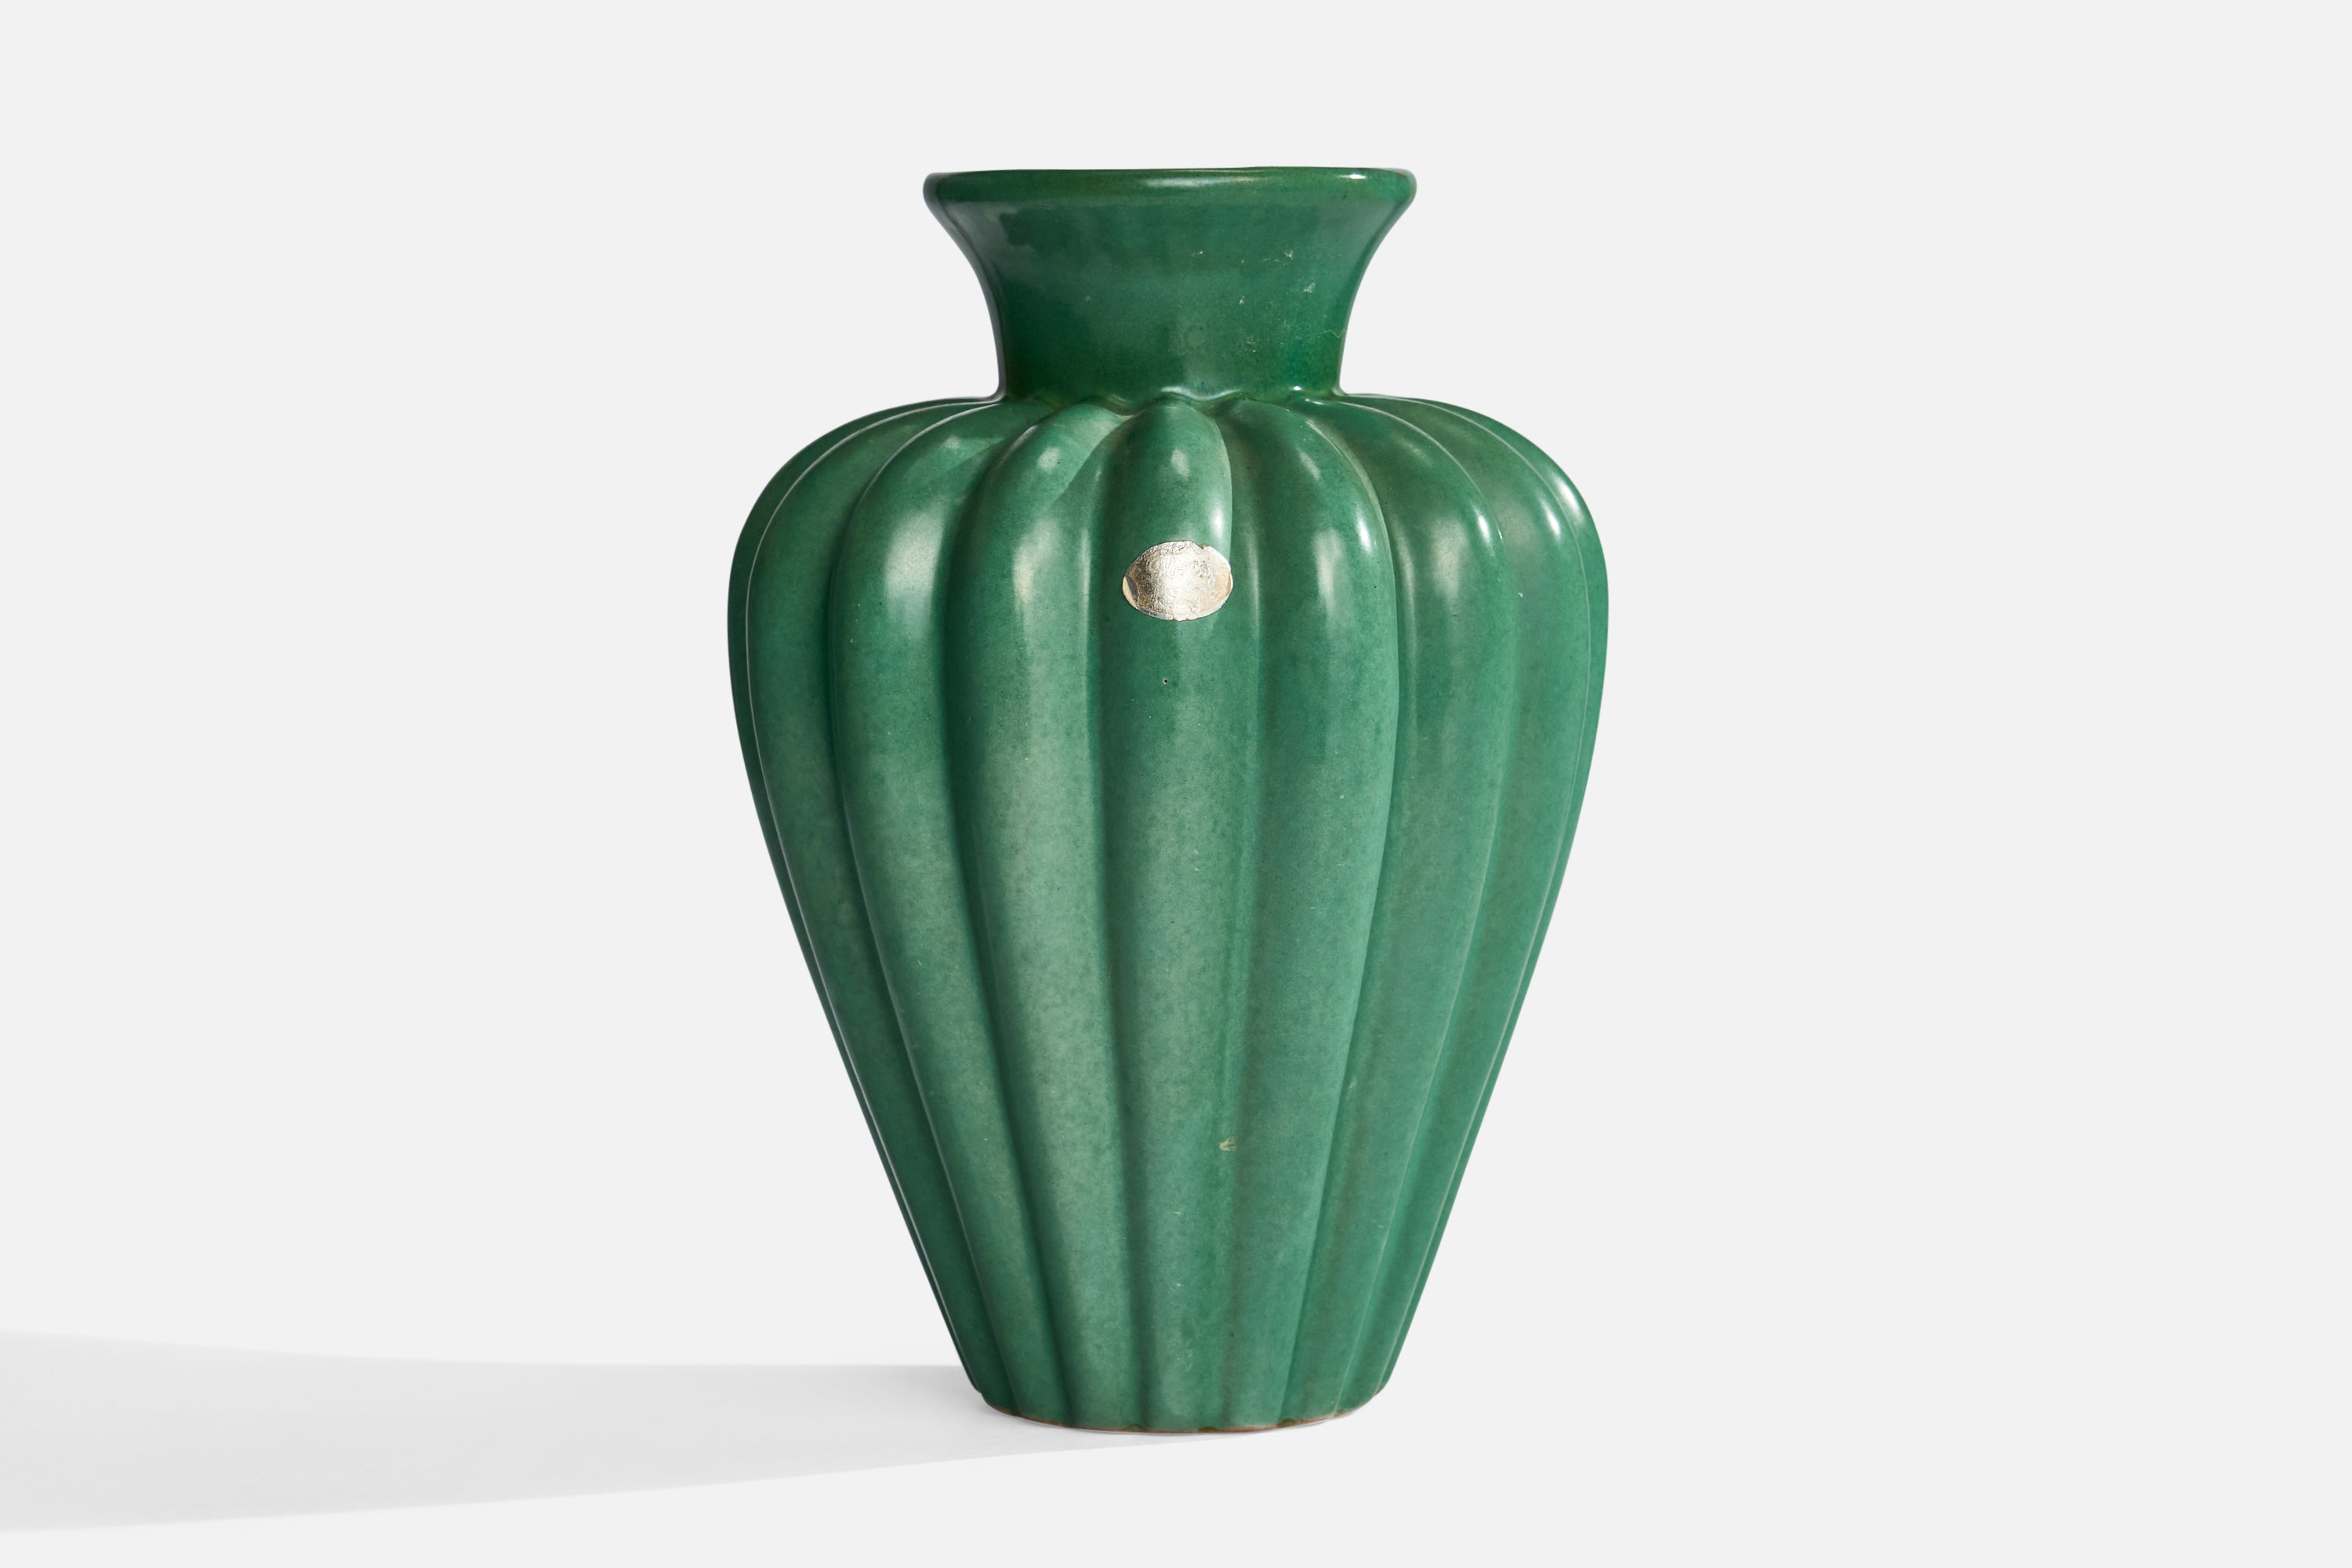 Grün glasierte, kannelierte Steingutvase, entworfen und hergestellt von Upsala Ekeby, Schweden, 1930er Jahre.